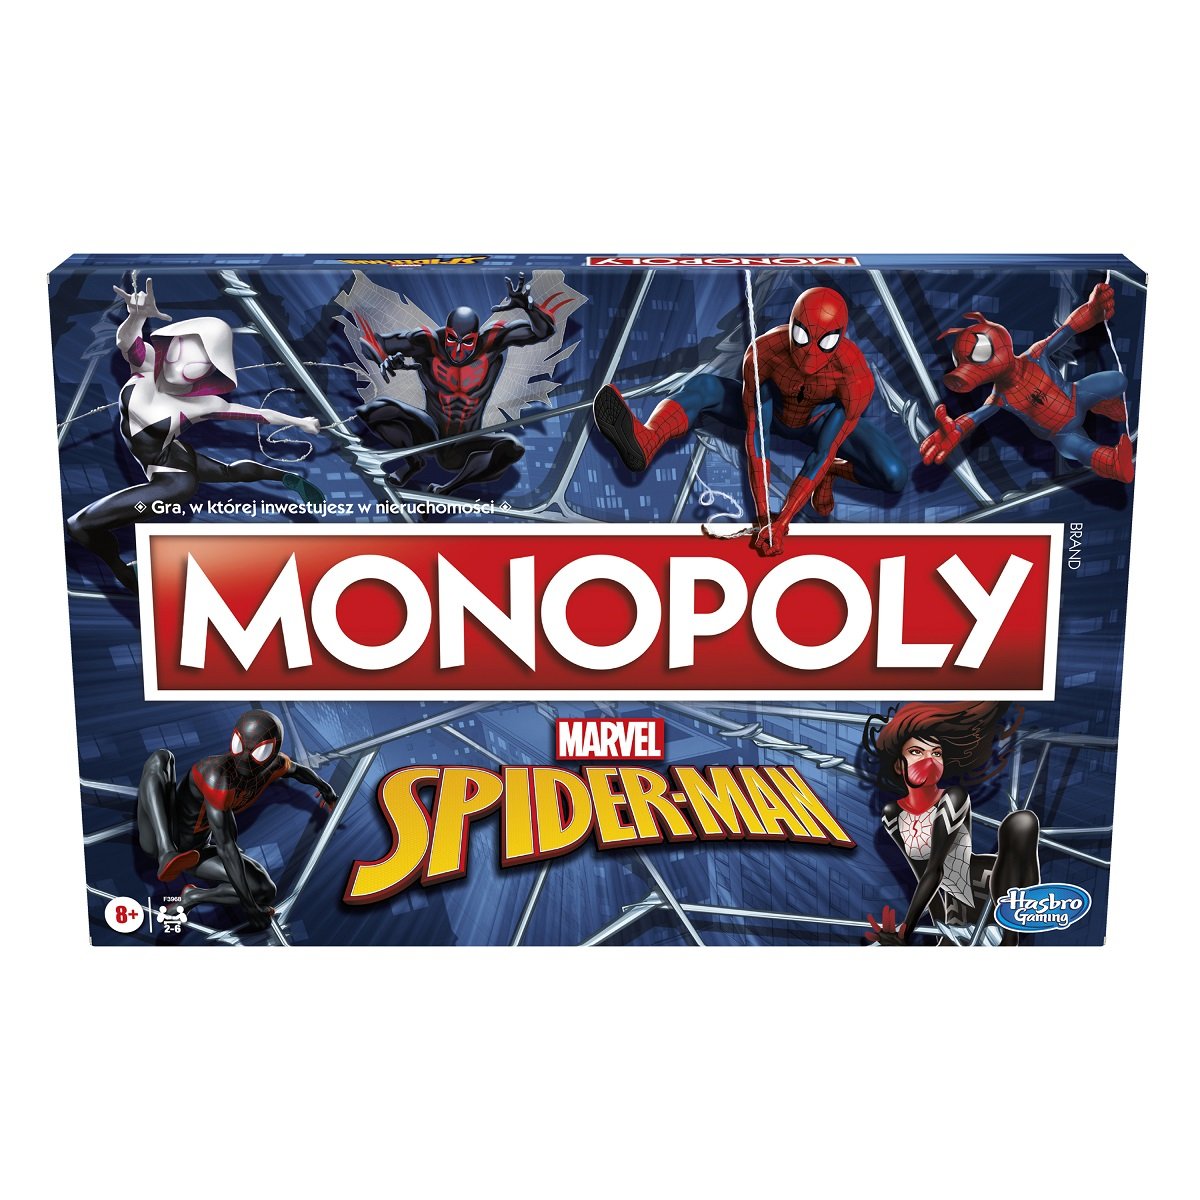 Фото - Настільна гра Hasbro Monopoly Spider-Man, F3968, gra planszowa 